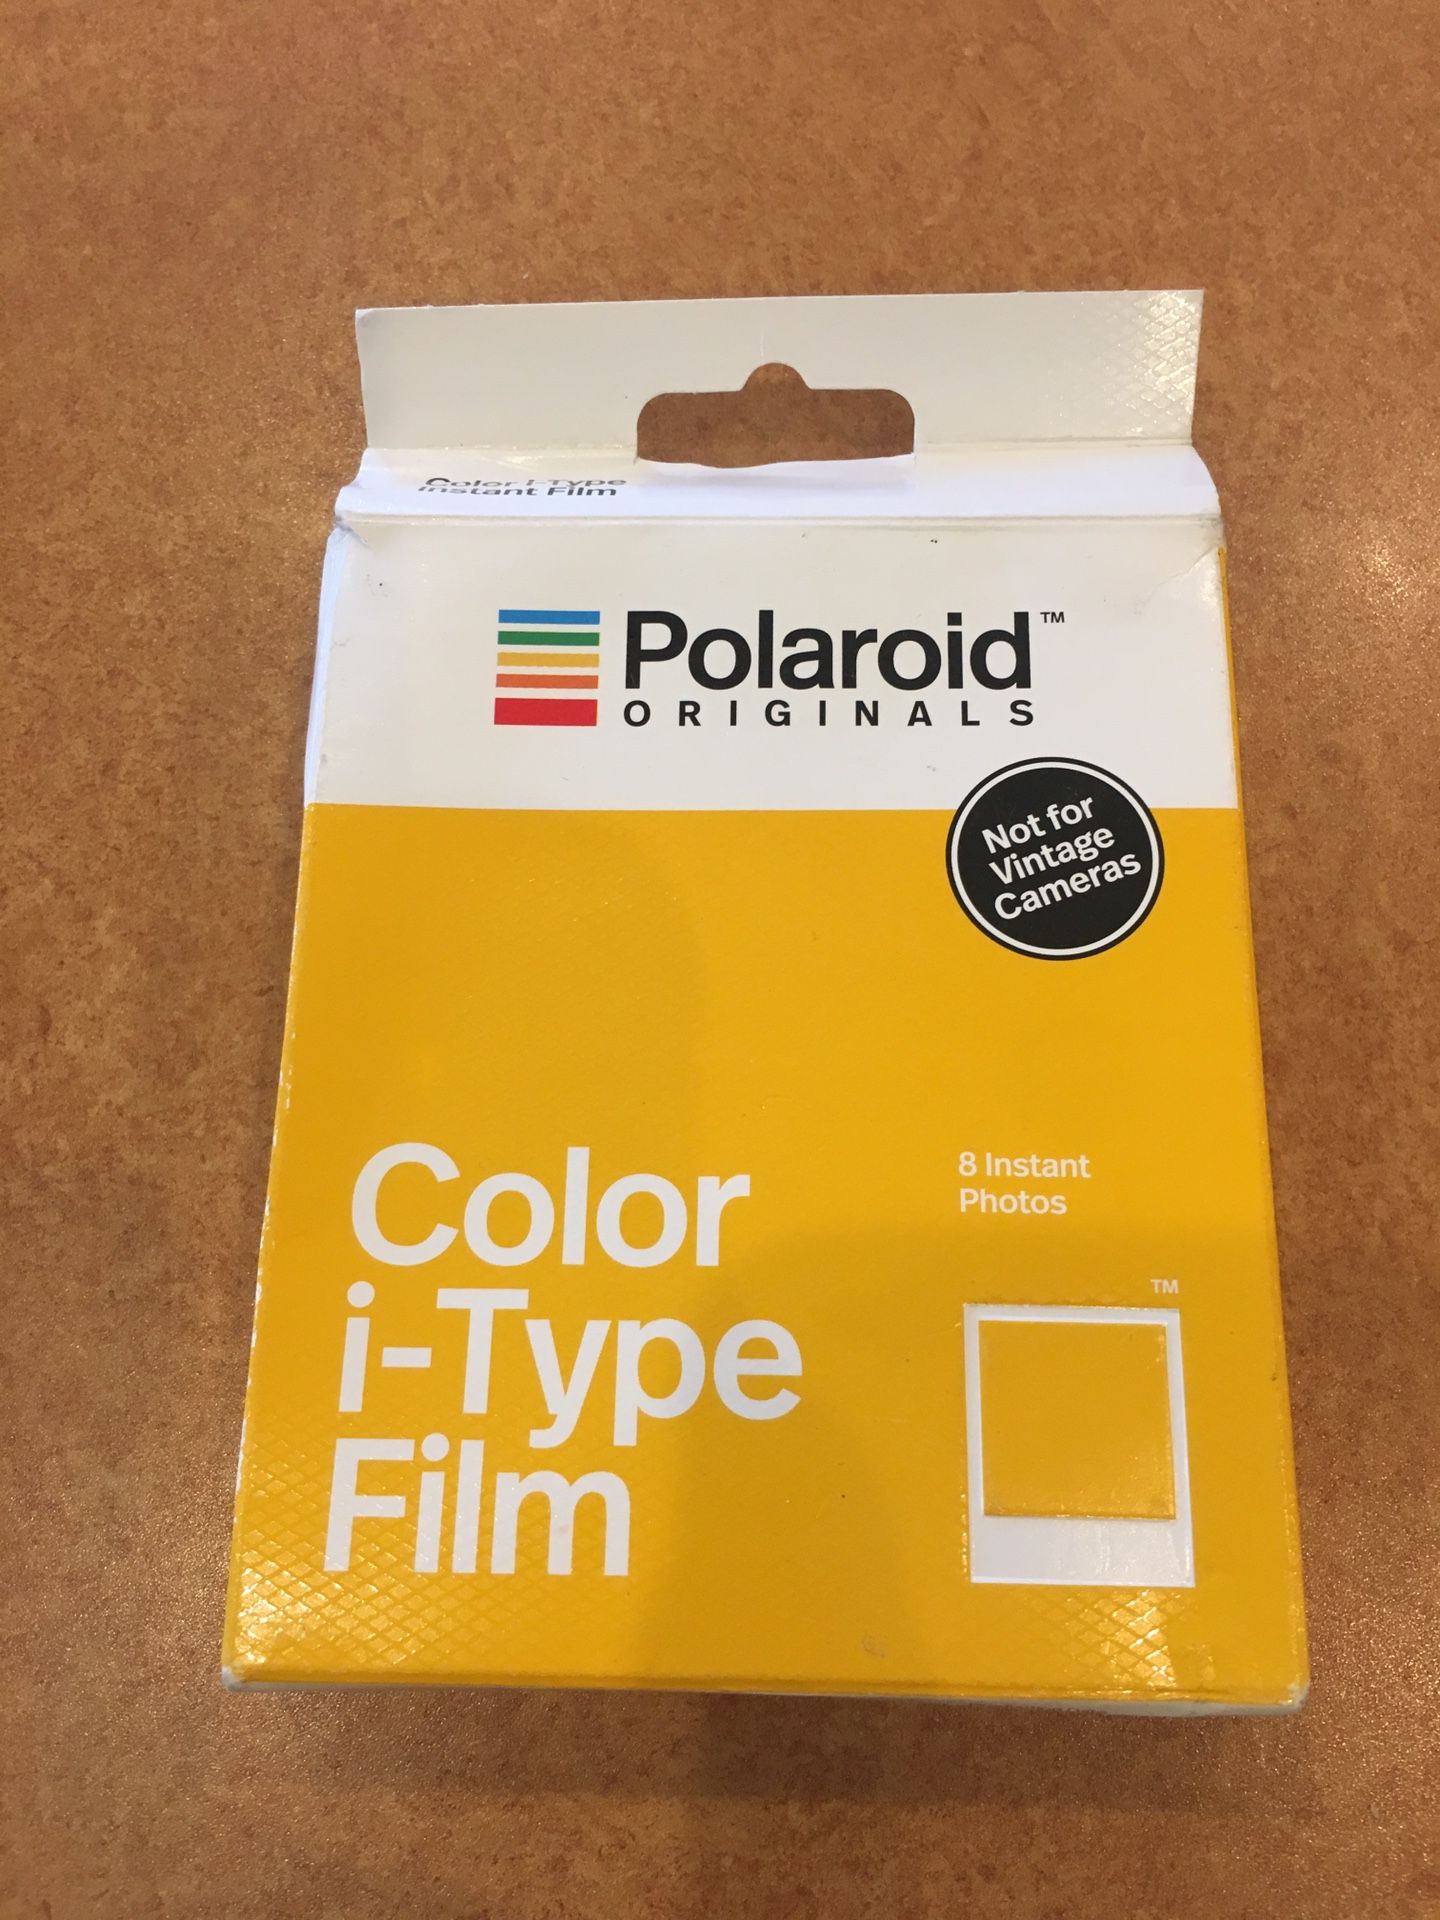 Polaroid originals. Color I-Type Film